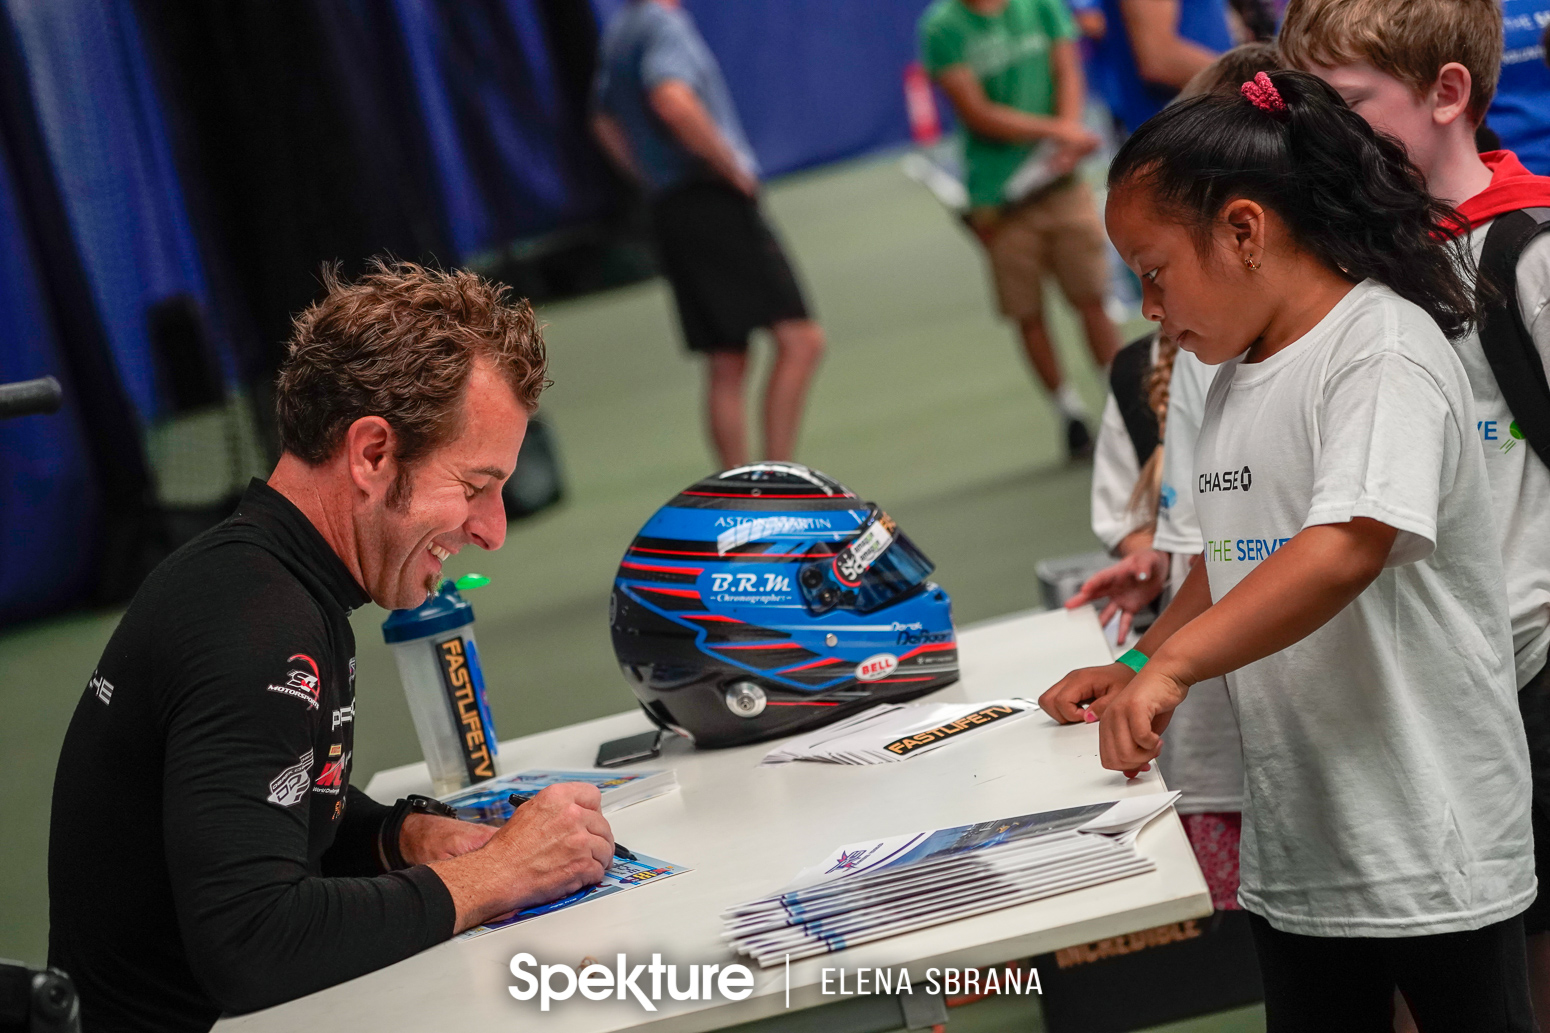 Earchphoto - Derek De Boer during a sports camp autograph session. 